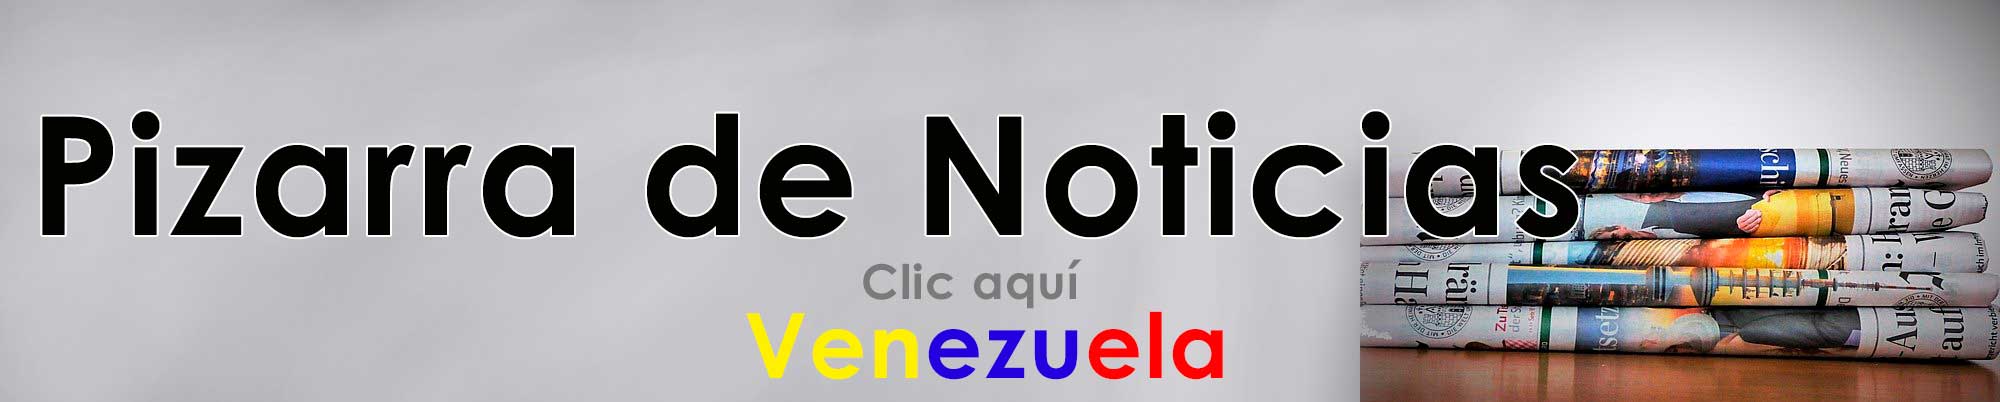 Noticias de Venezuela